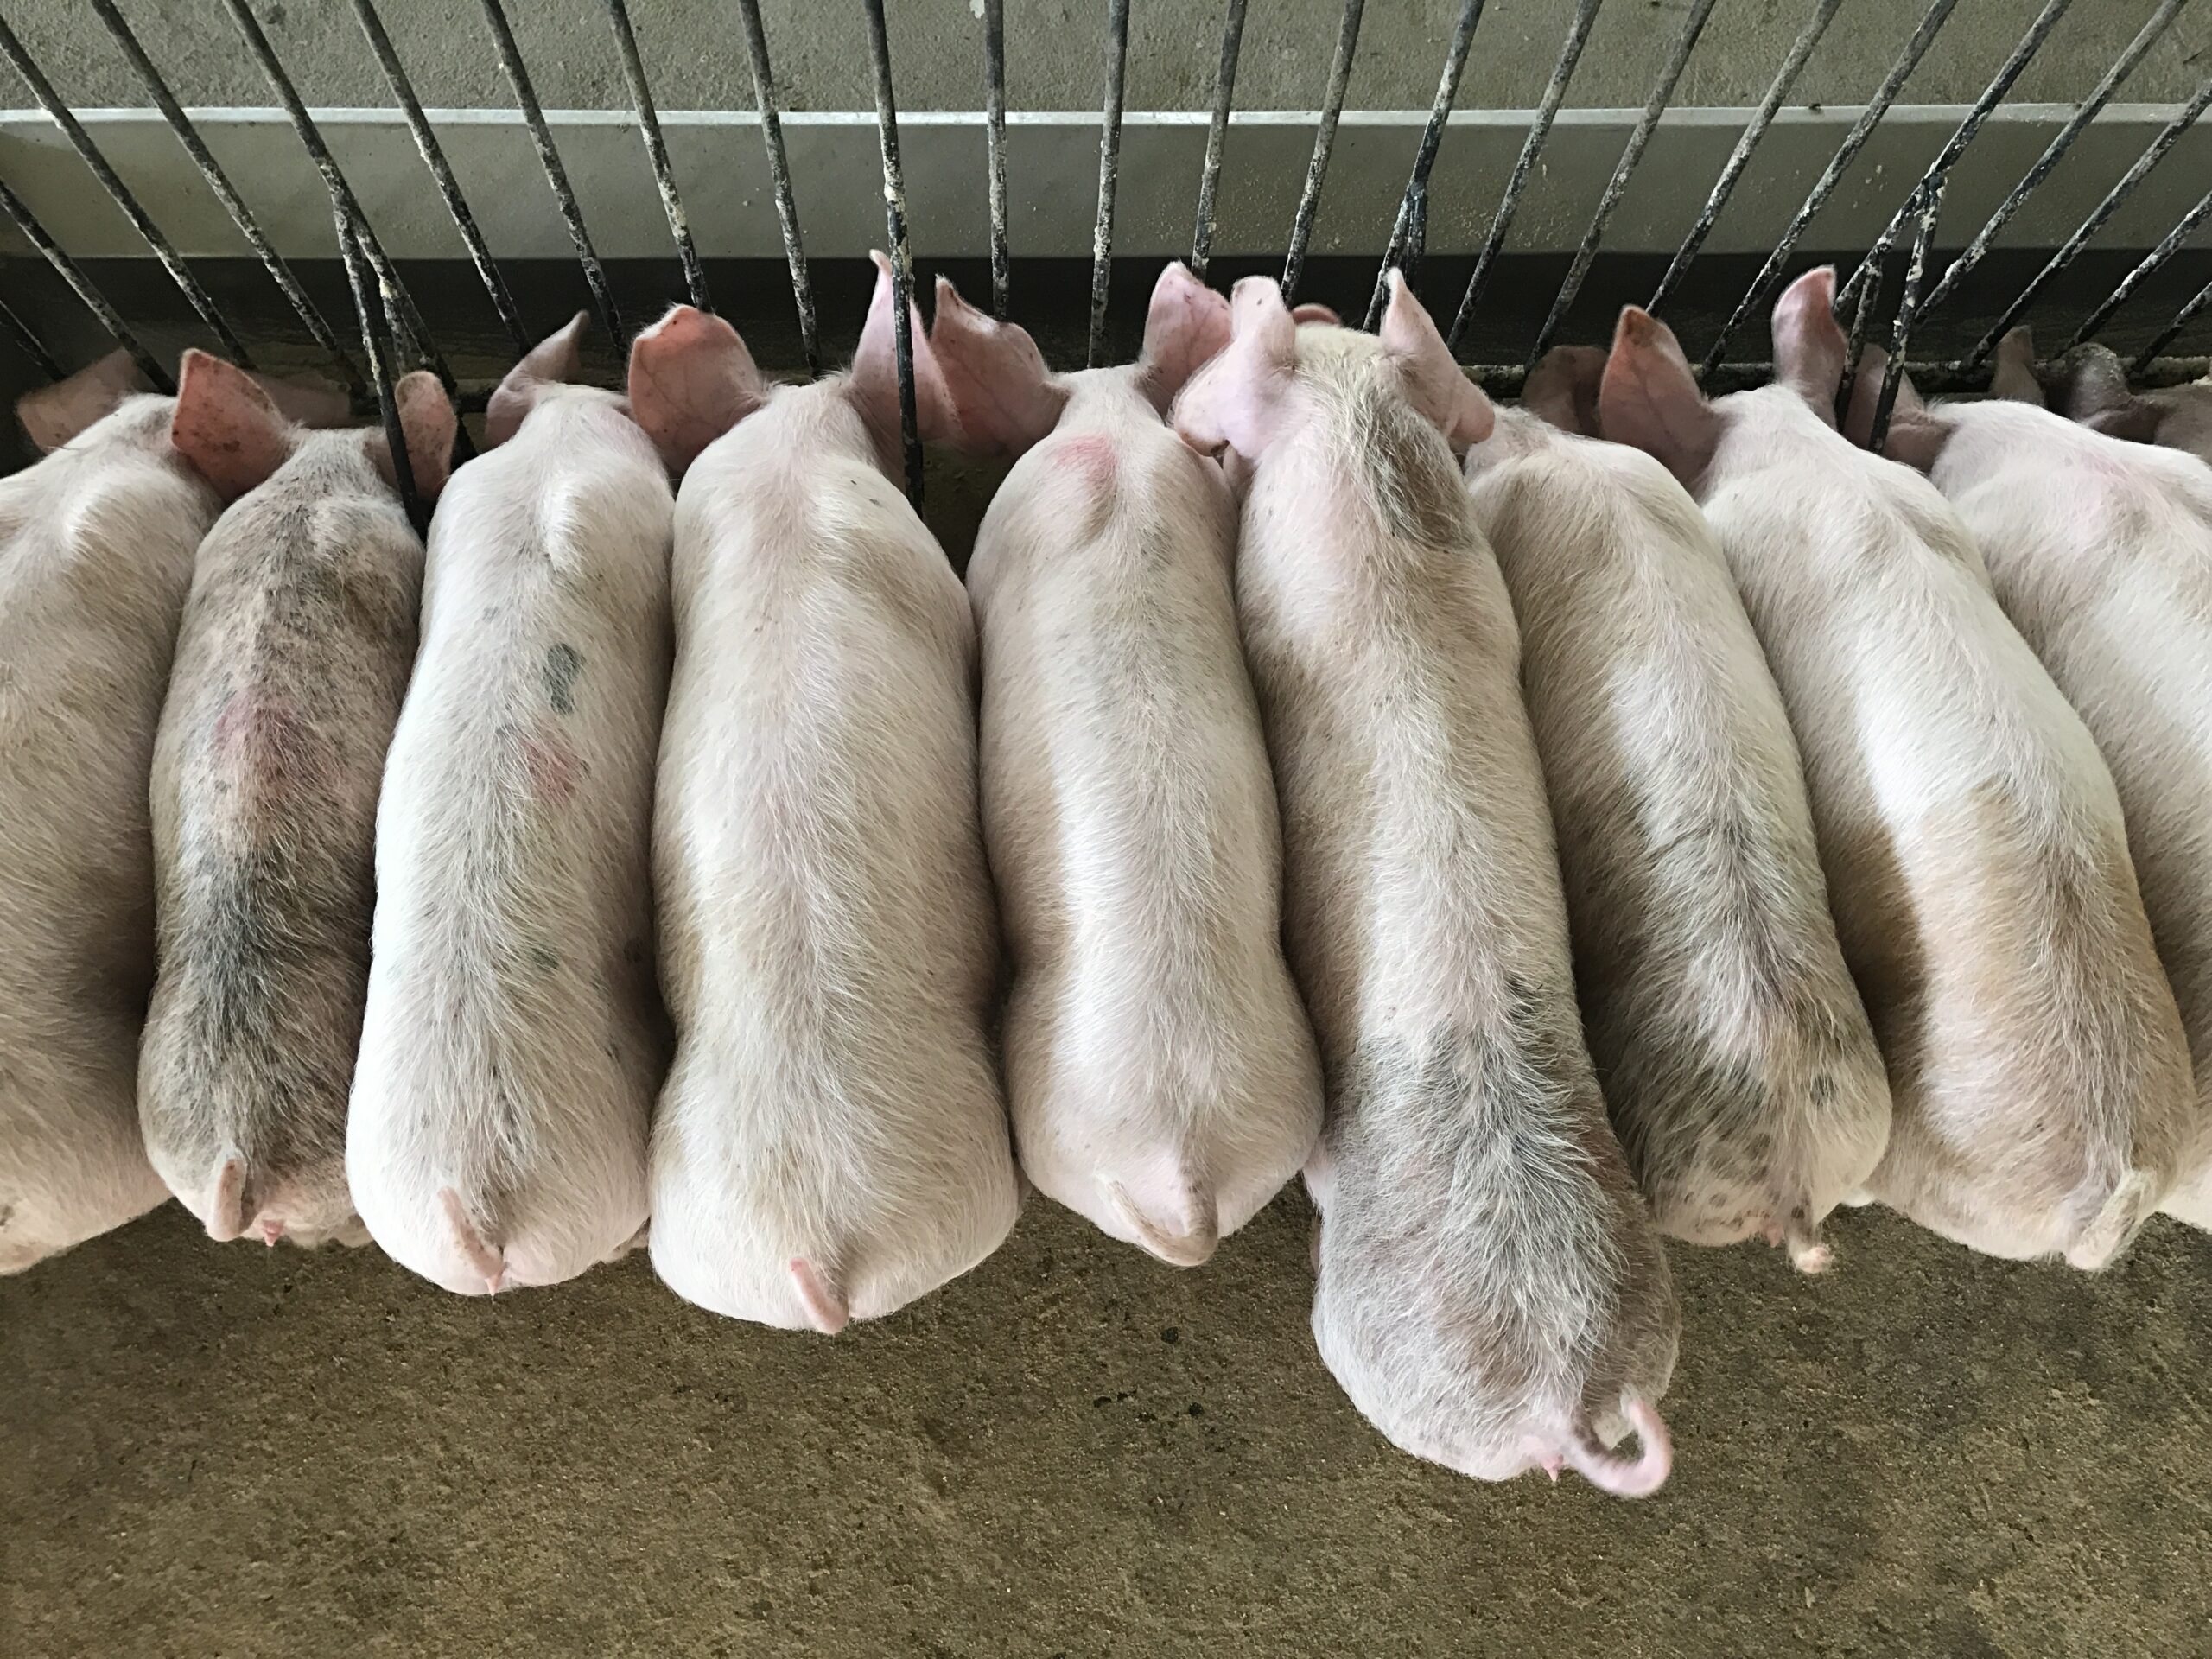 Lãng phí thức ăn trong chăn nuôi lợn